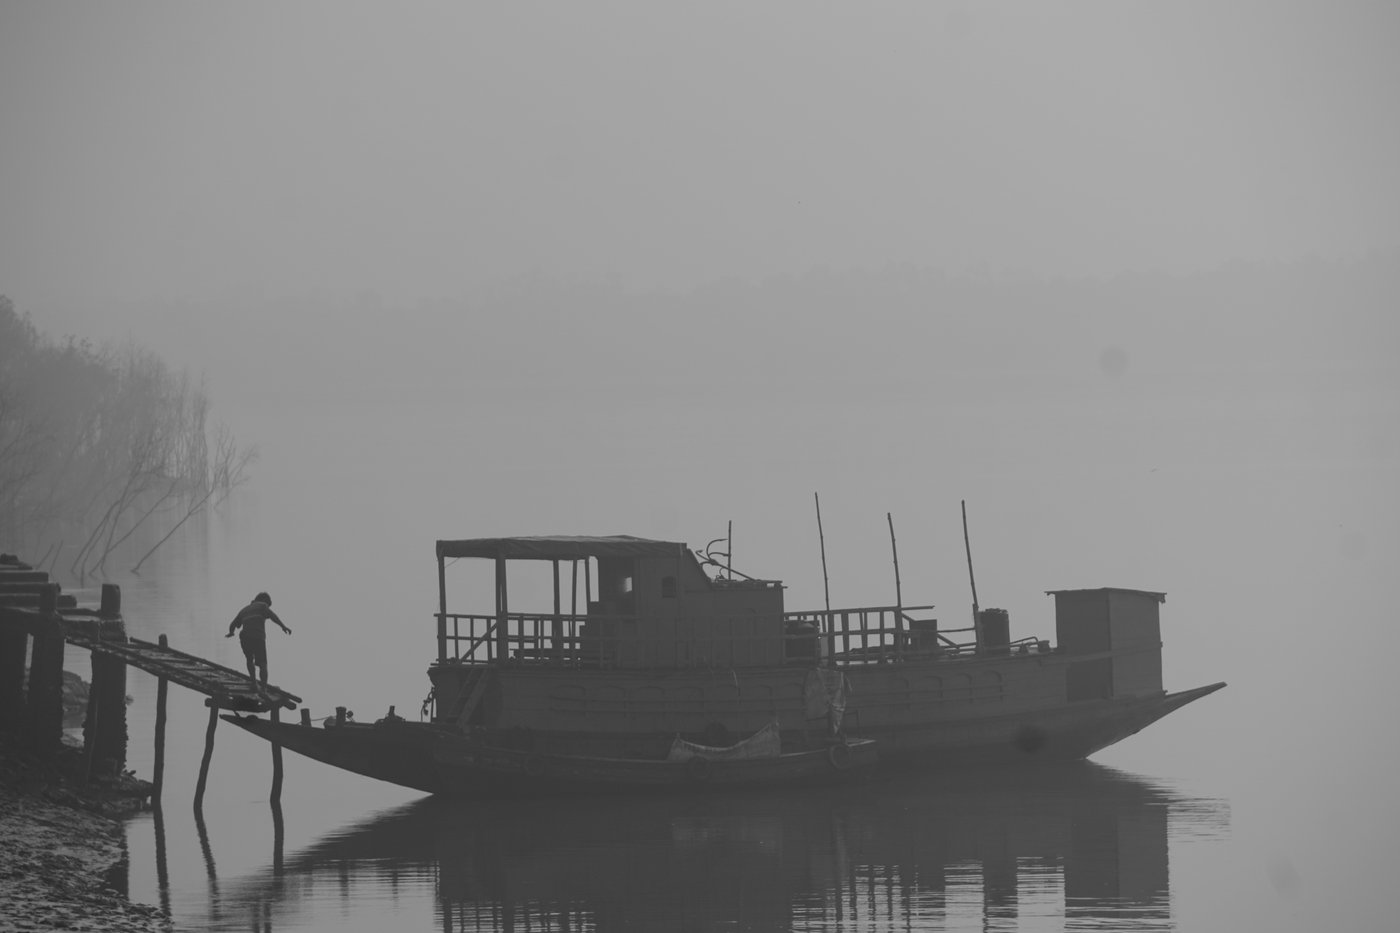 Man getting on ferry on a foggy day